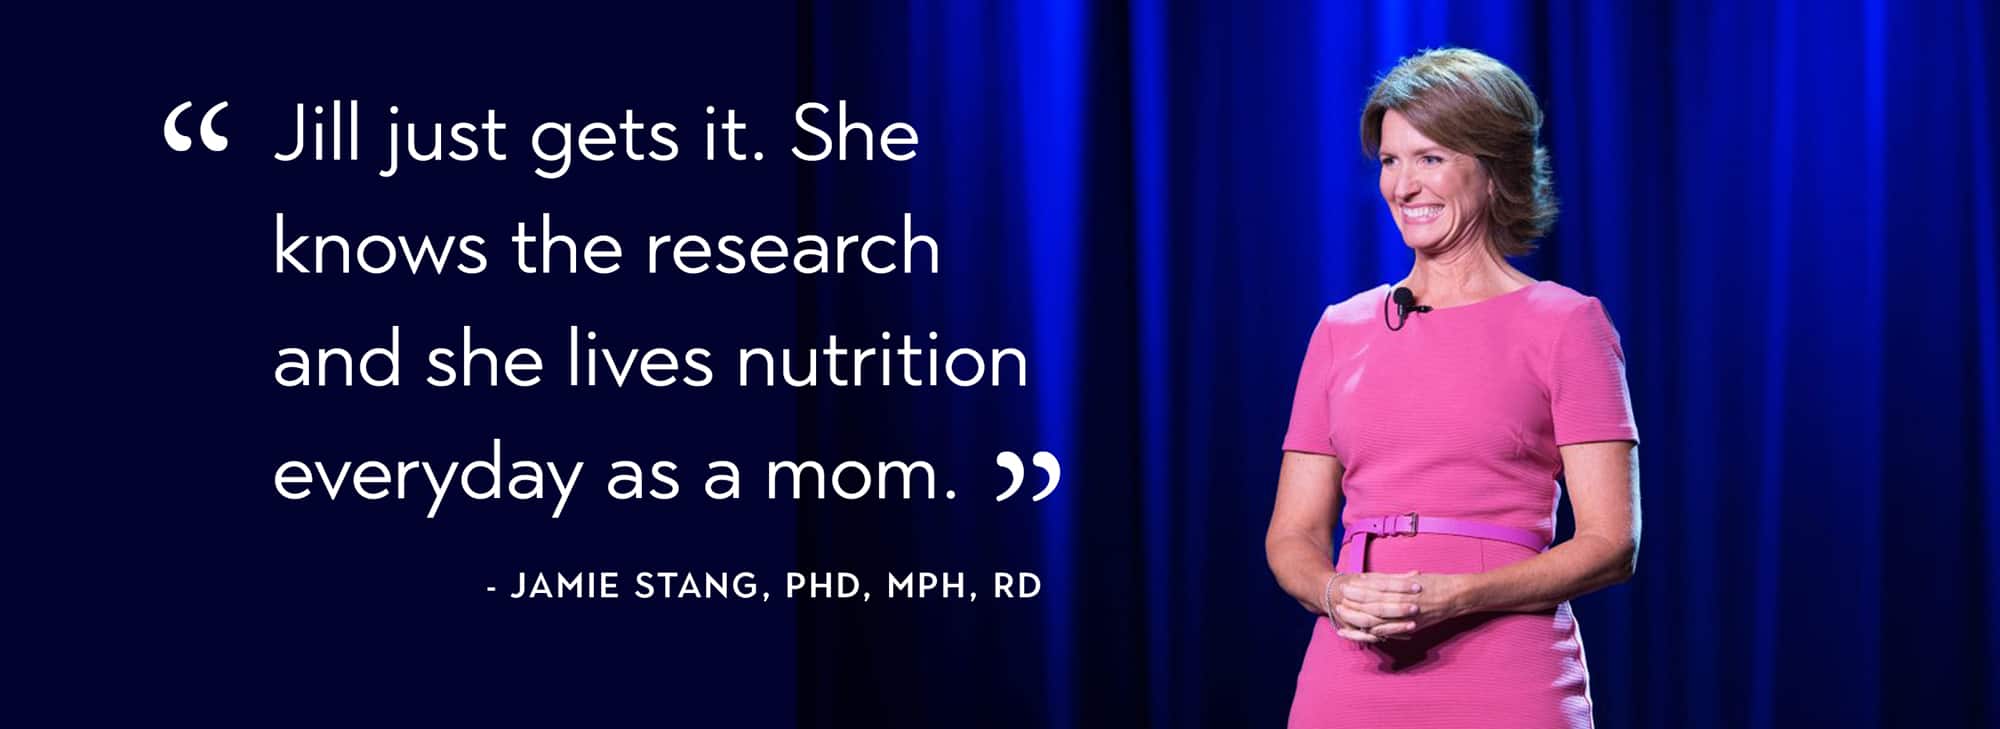 Jill Castle, MS, RDN childhood nutrition speaker